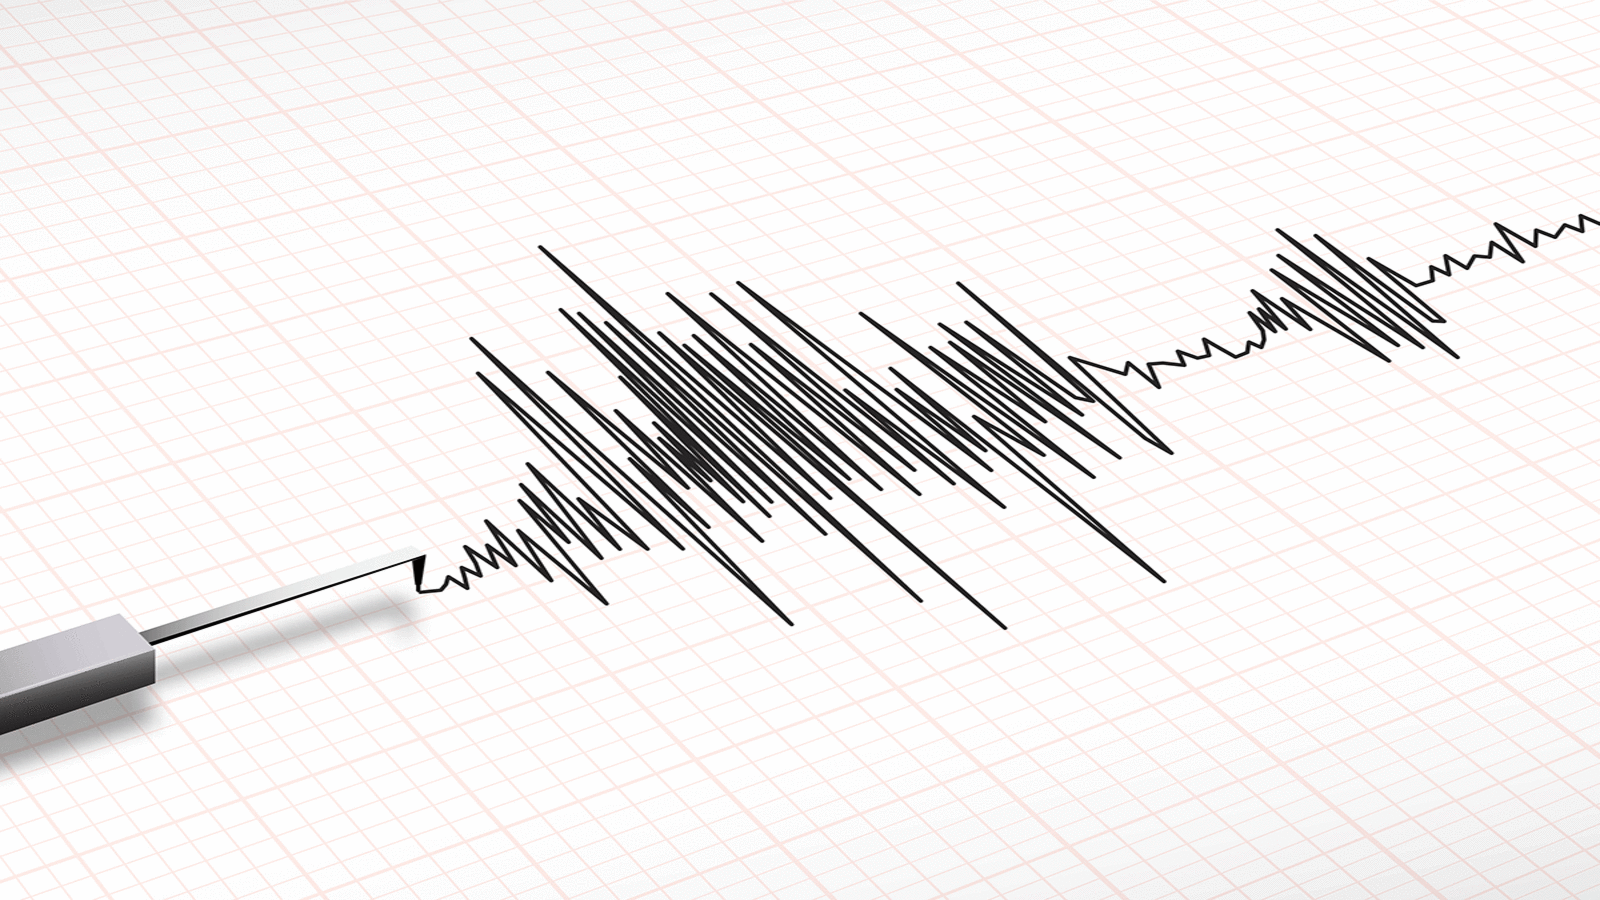 On Monday, the Ladakh area of India had a magnitude 5.7 earthquake.